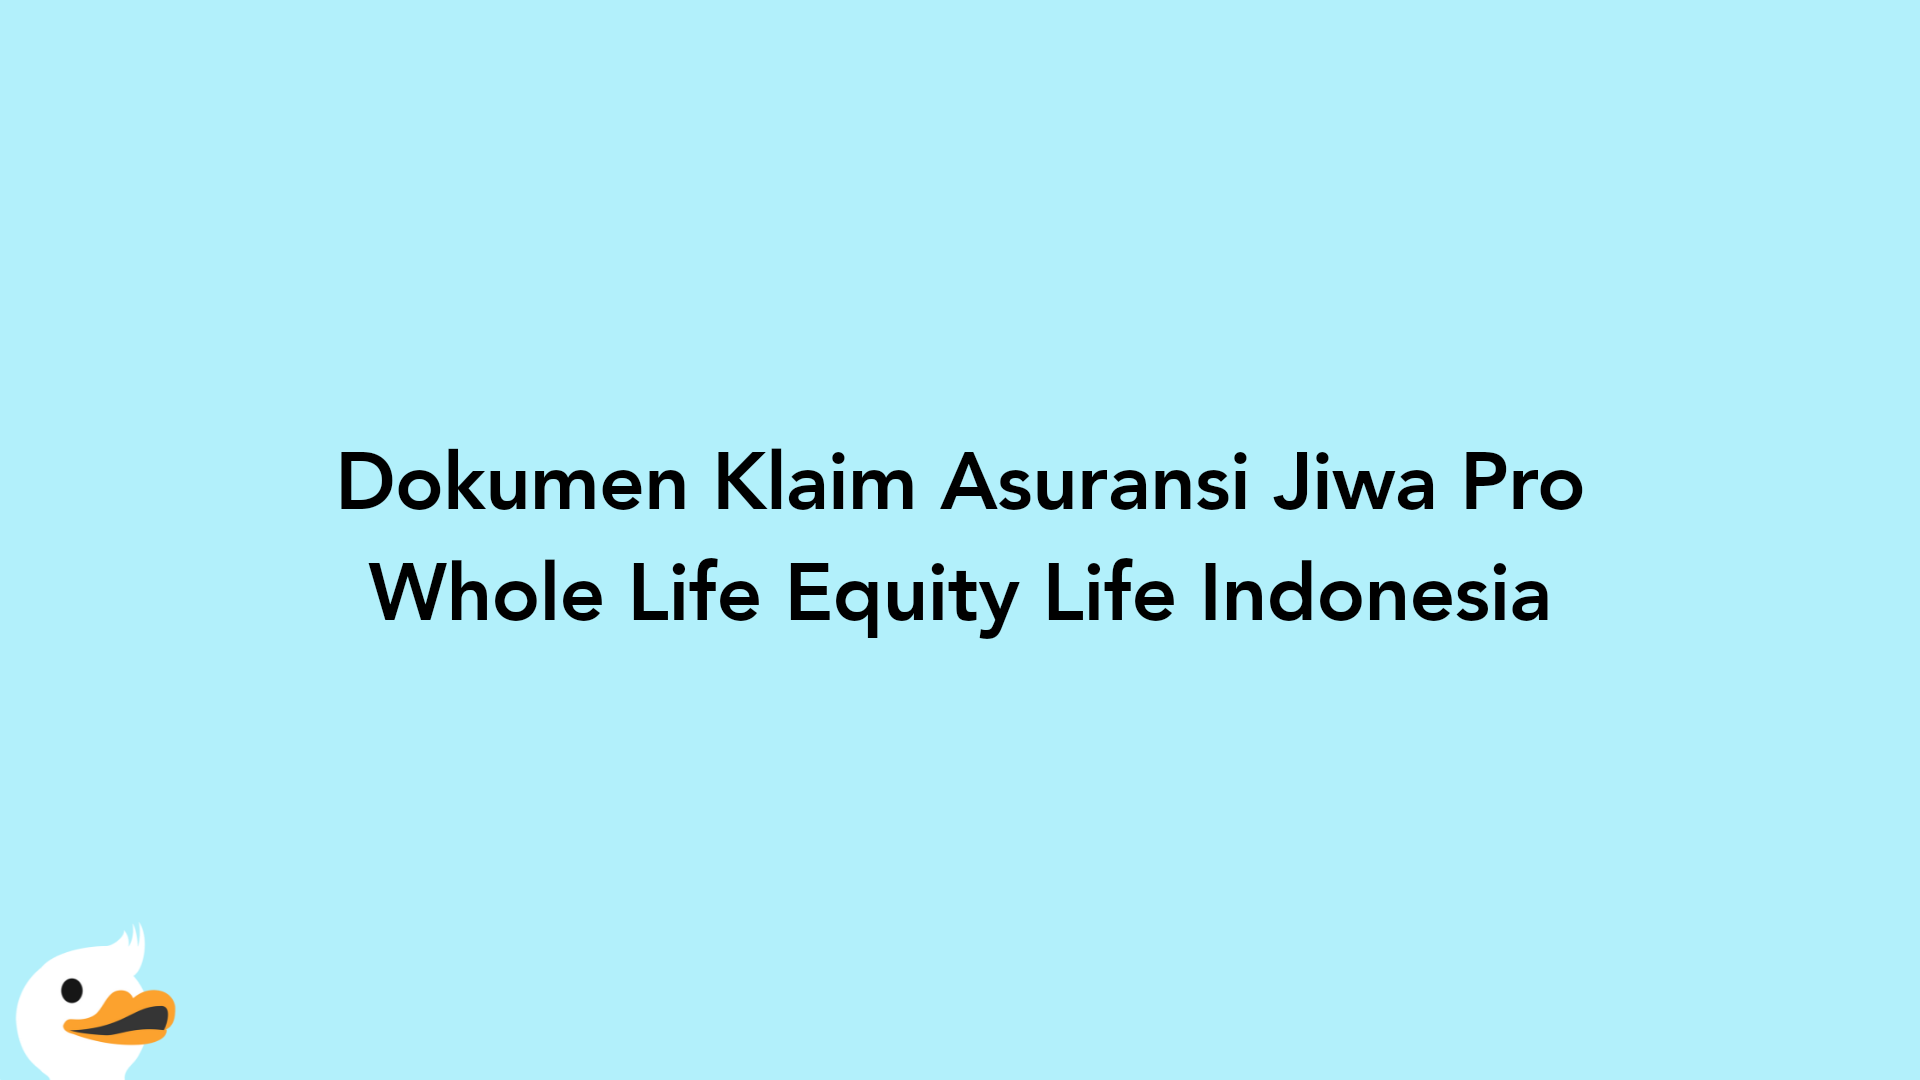 Dokumen Klaim Asuransi Jiwa Pro Whole Life Equity Life Indonesia